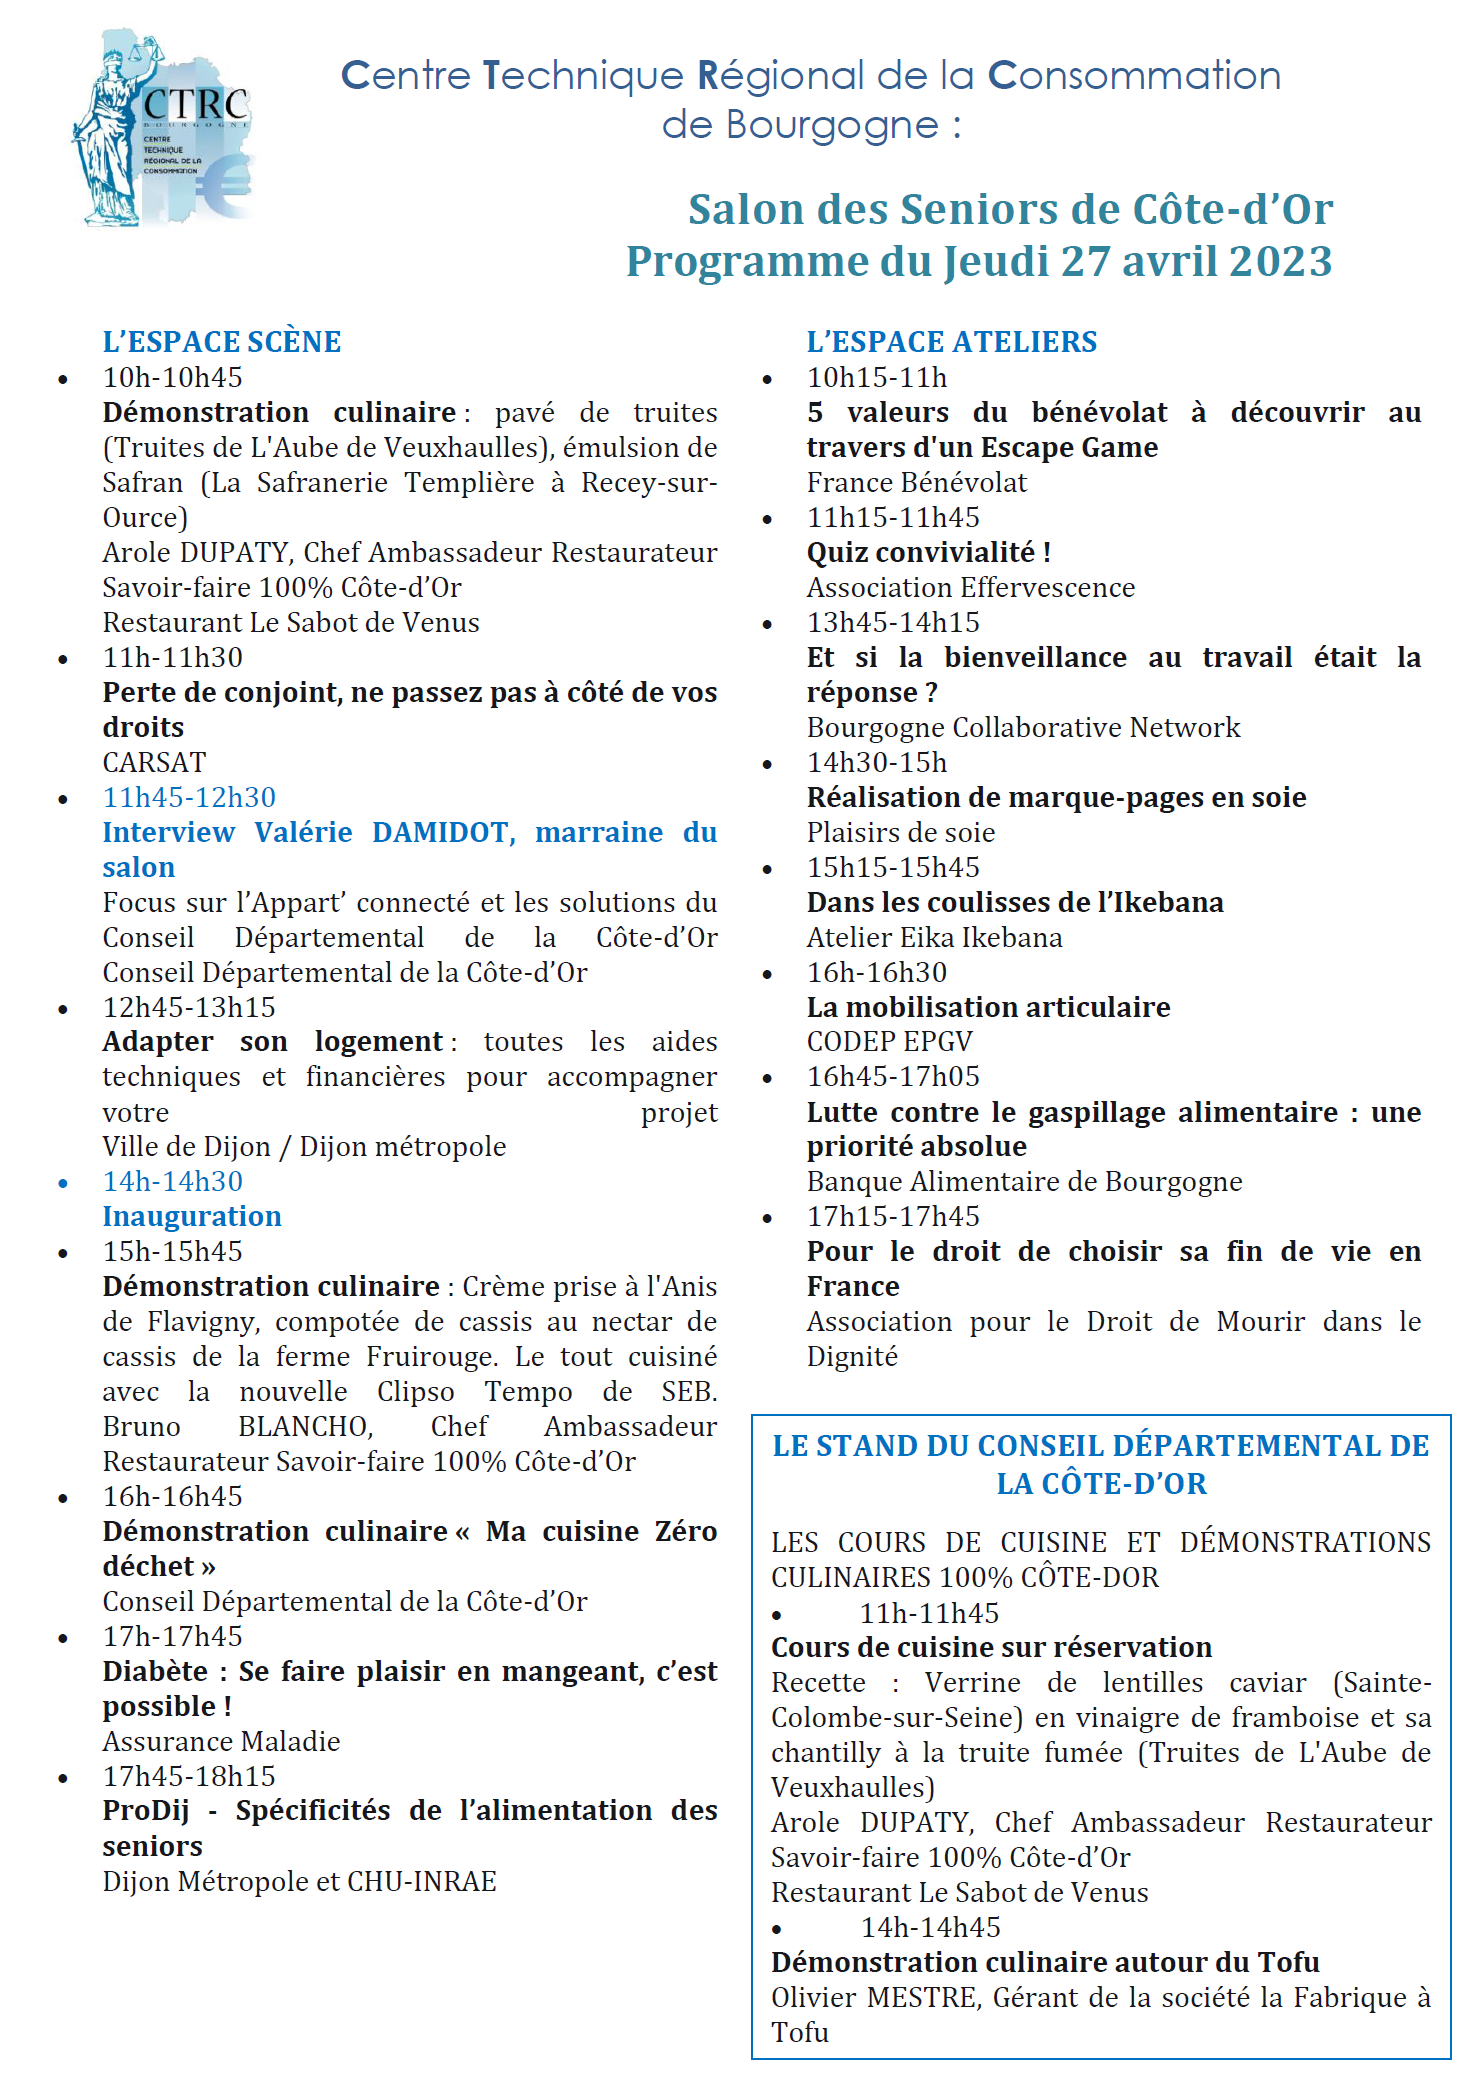 Programme 27 avril 2023 - Salon des Seniors - CTRC de Bourgogne